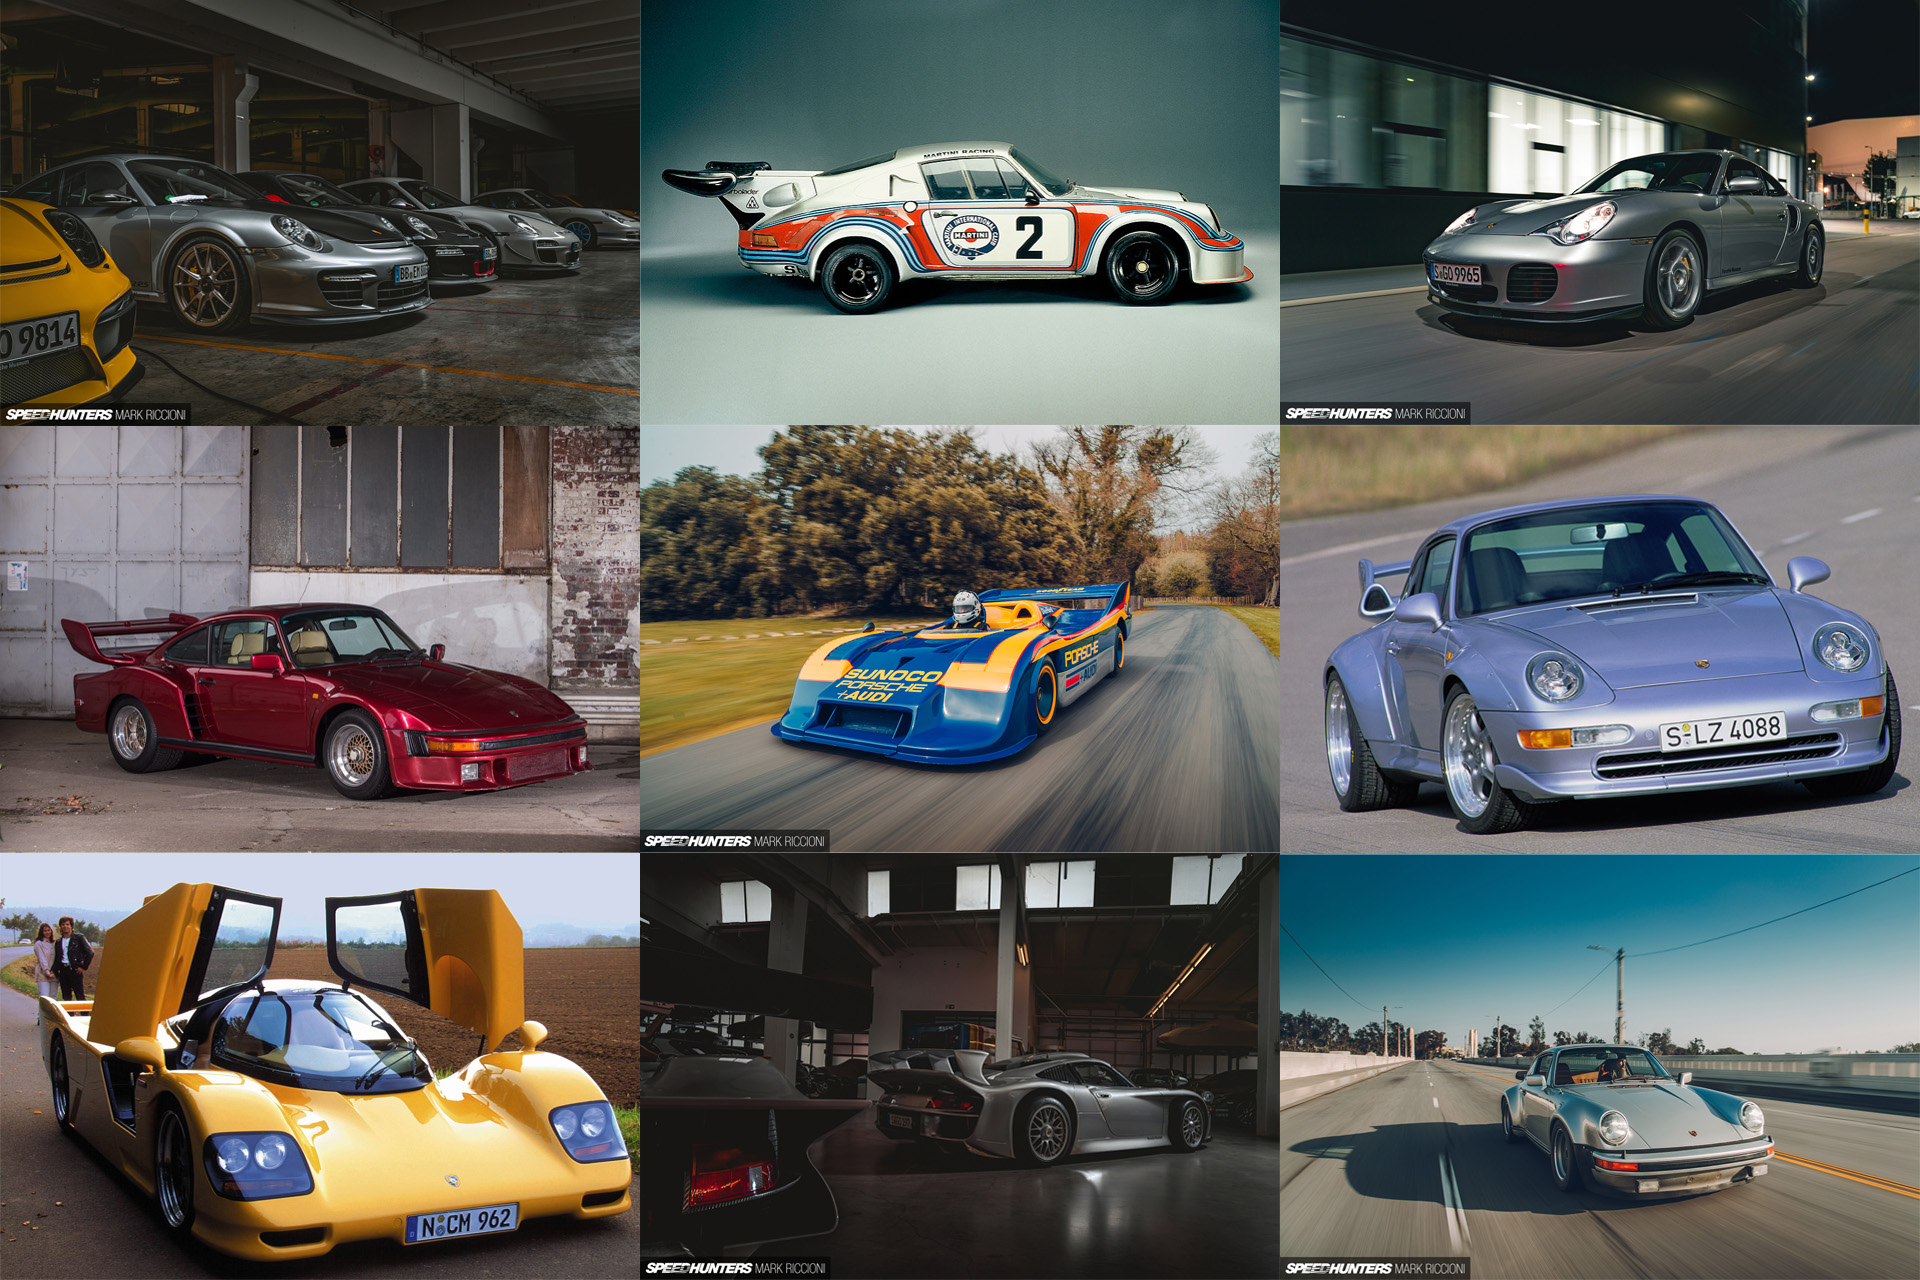 Rusland Meningsløs lede efter 10 Of The Best: Turbo Porsches - Speedhunters